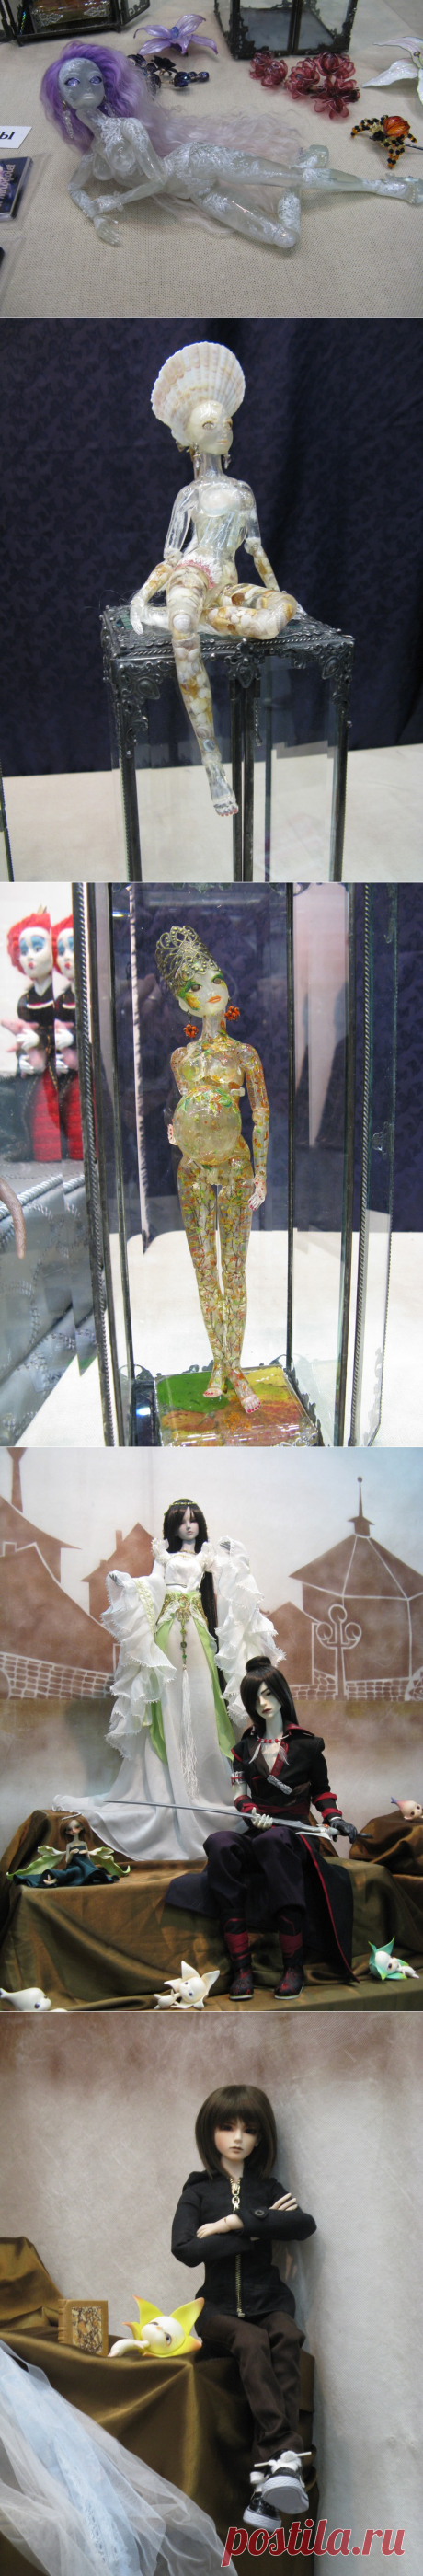 Самые необычные работы на выставке кукол на Тишинке - Ярмарка Мастеров - ручная работа, handmade